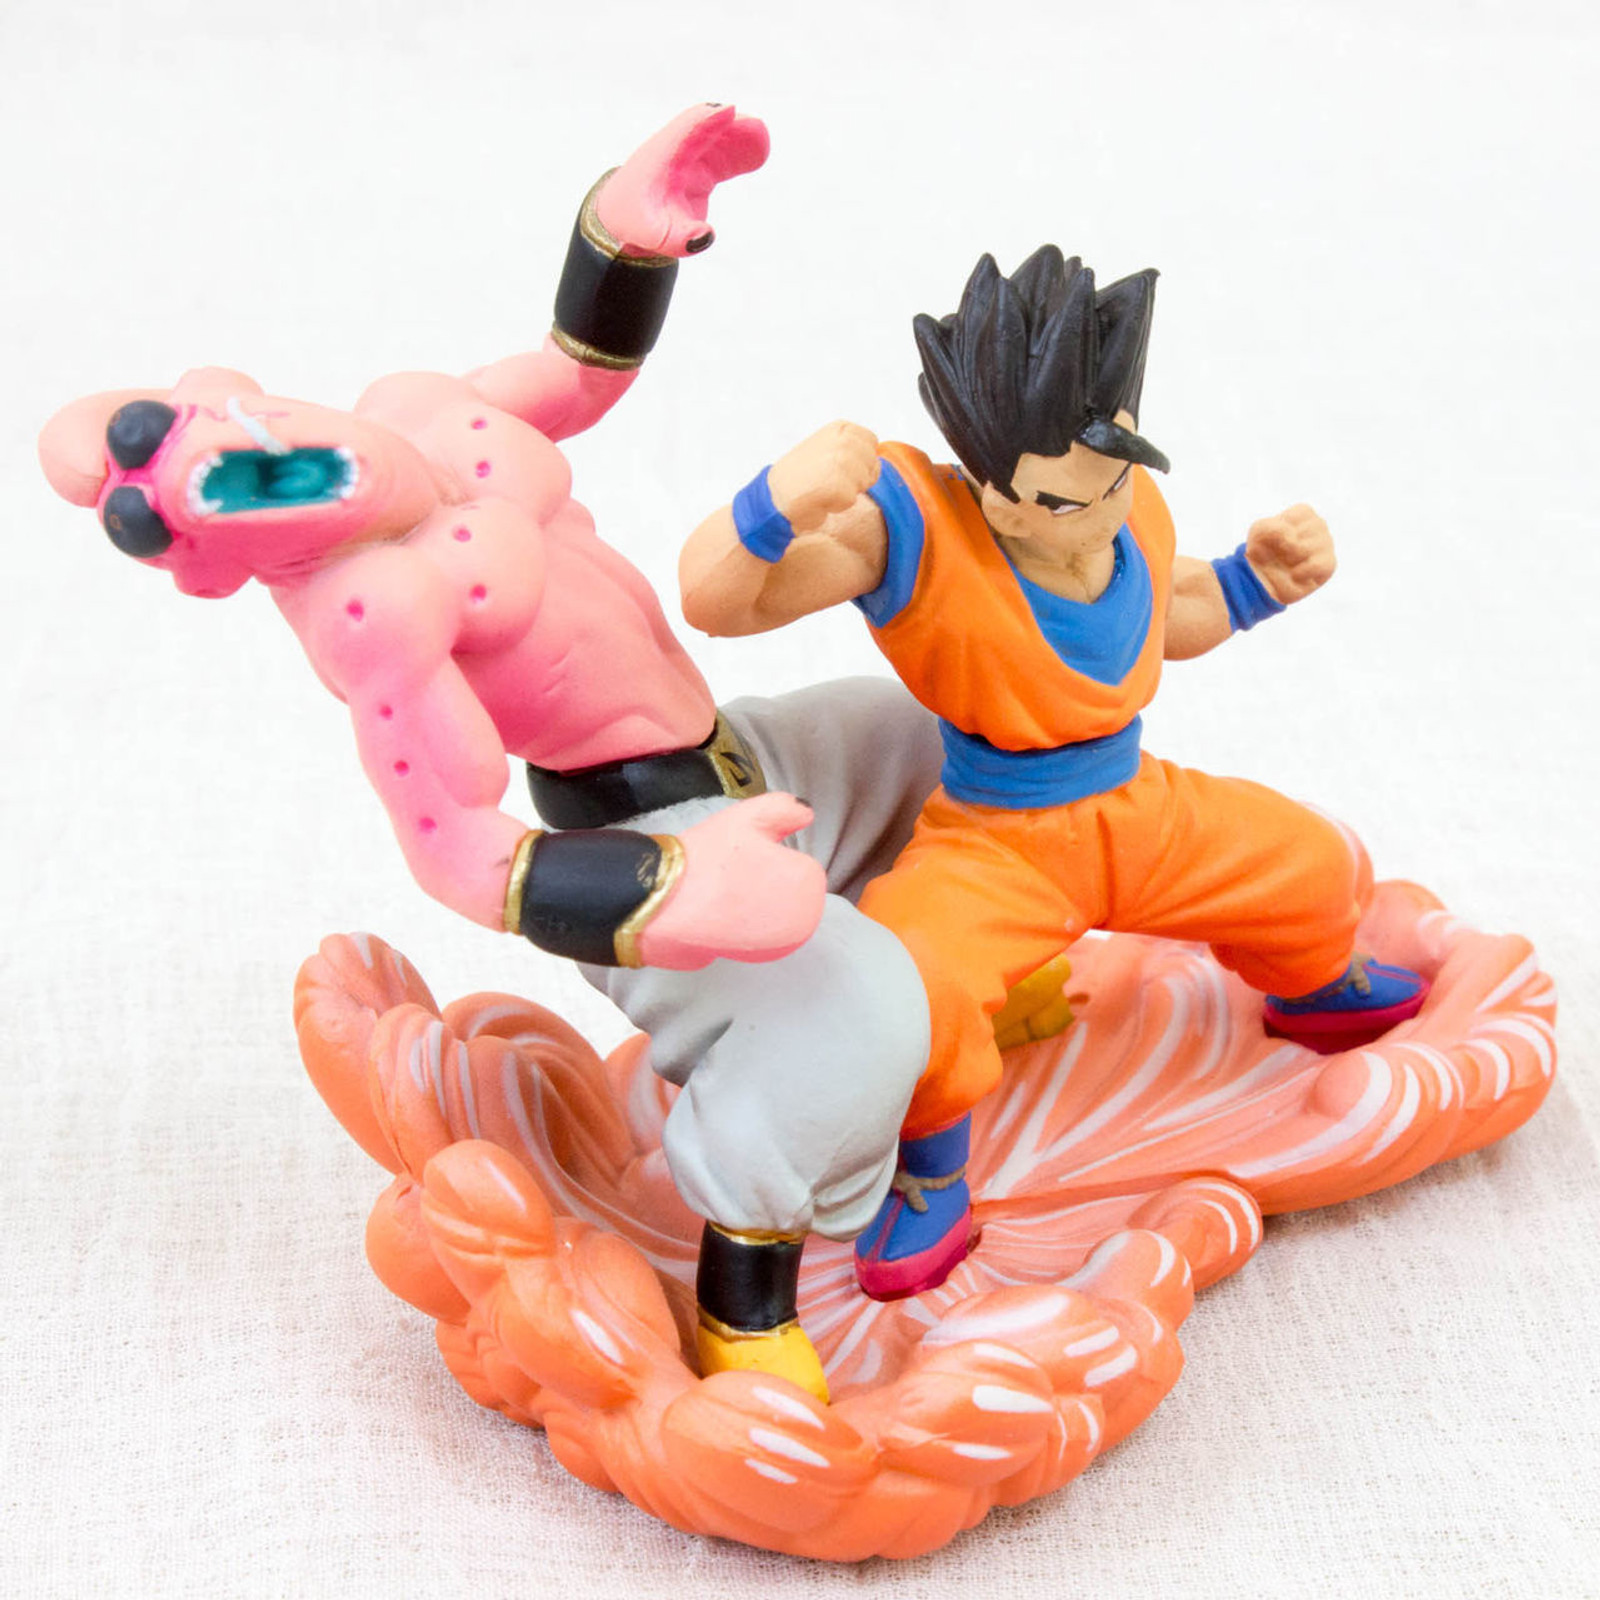 RARE! Dragon Ball Z Mini Figure Gohan vs Majin Boo Megahouse JAPAN ANIME CAPSULE